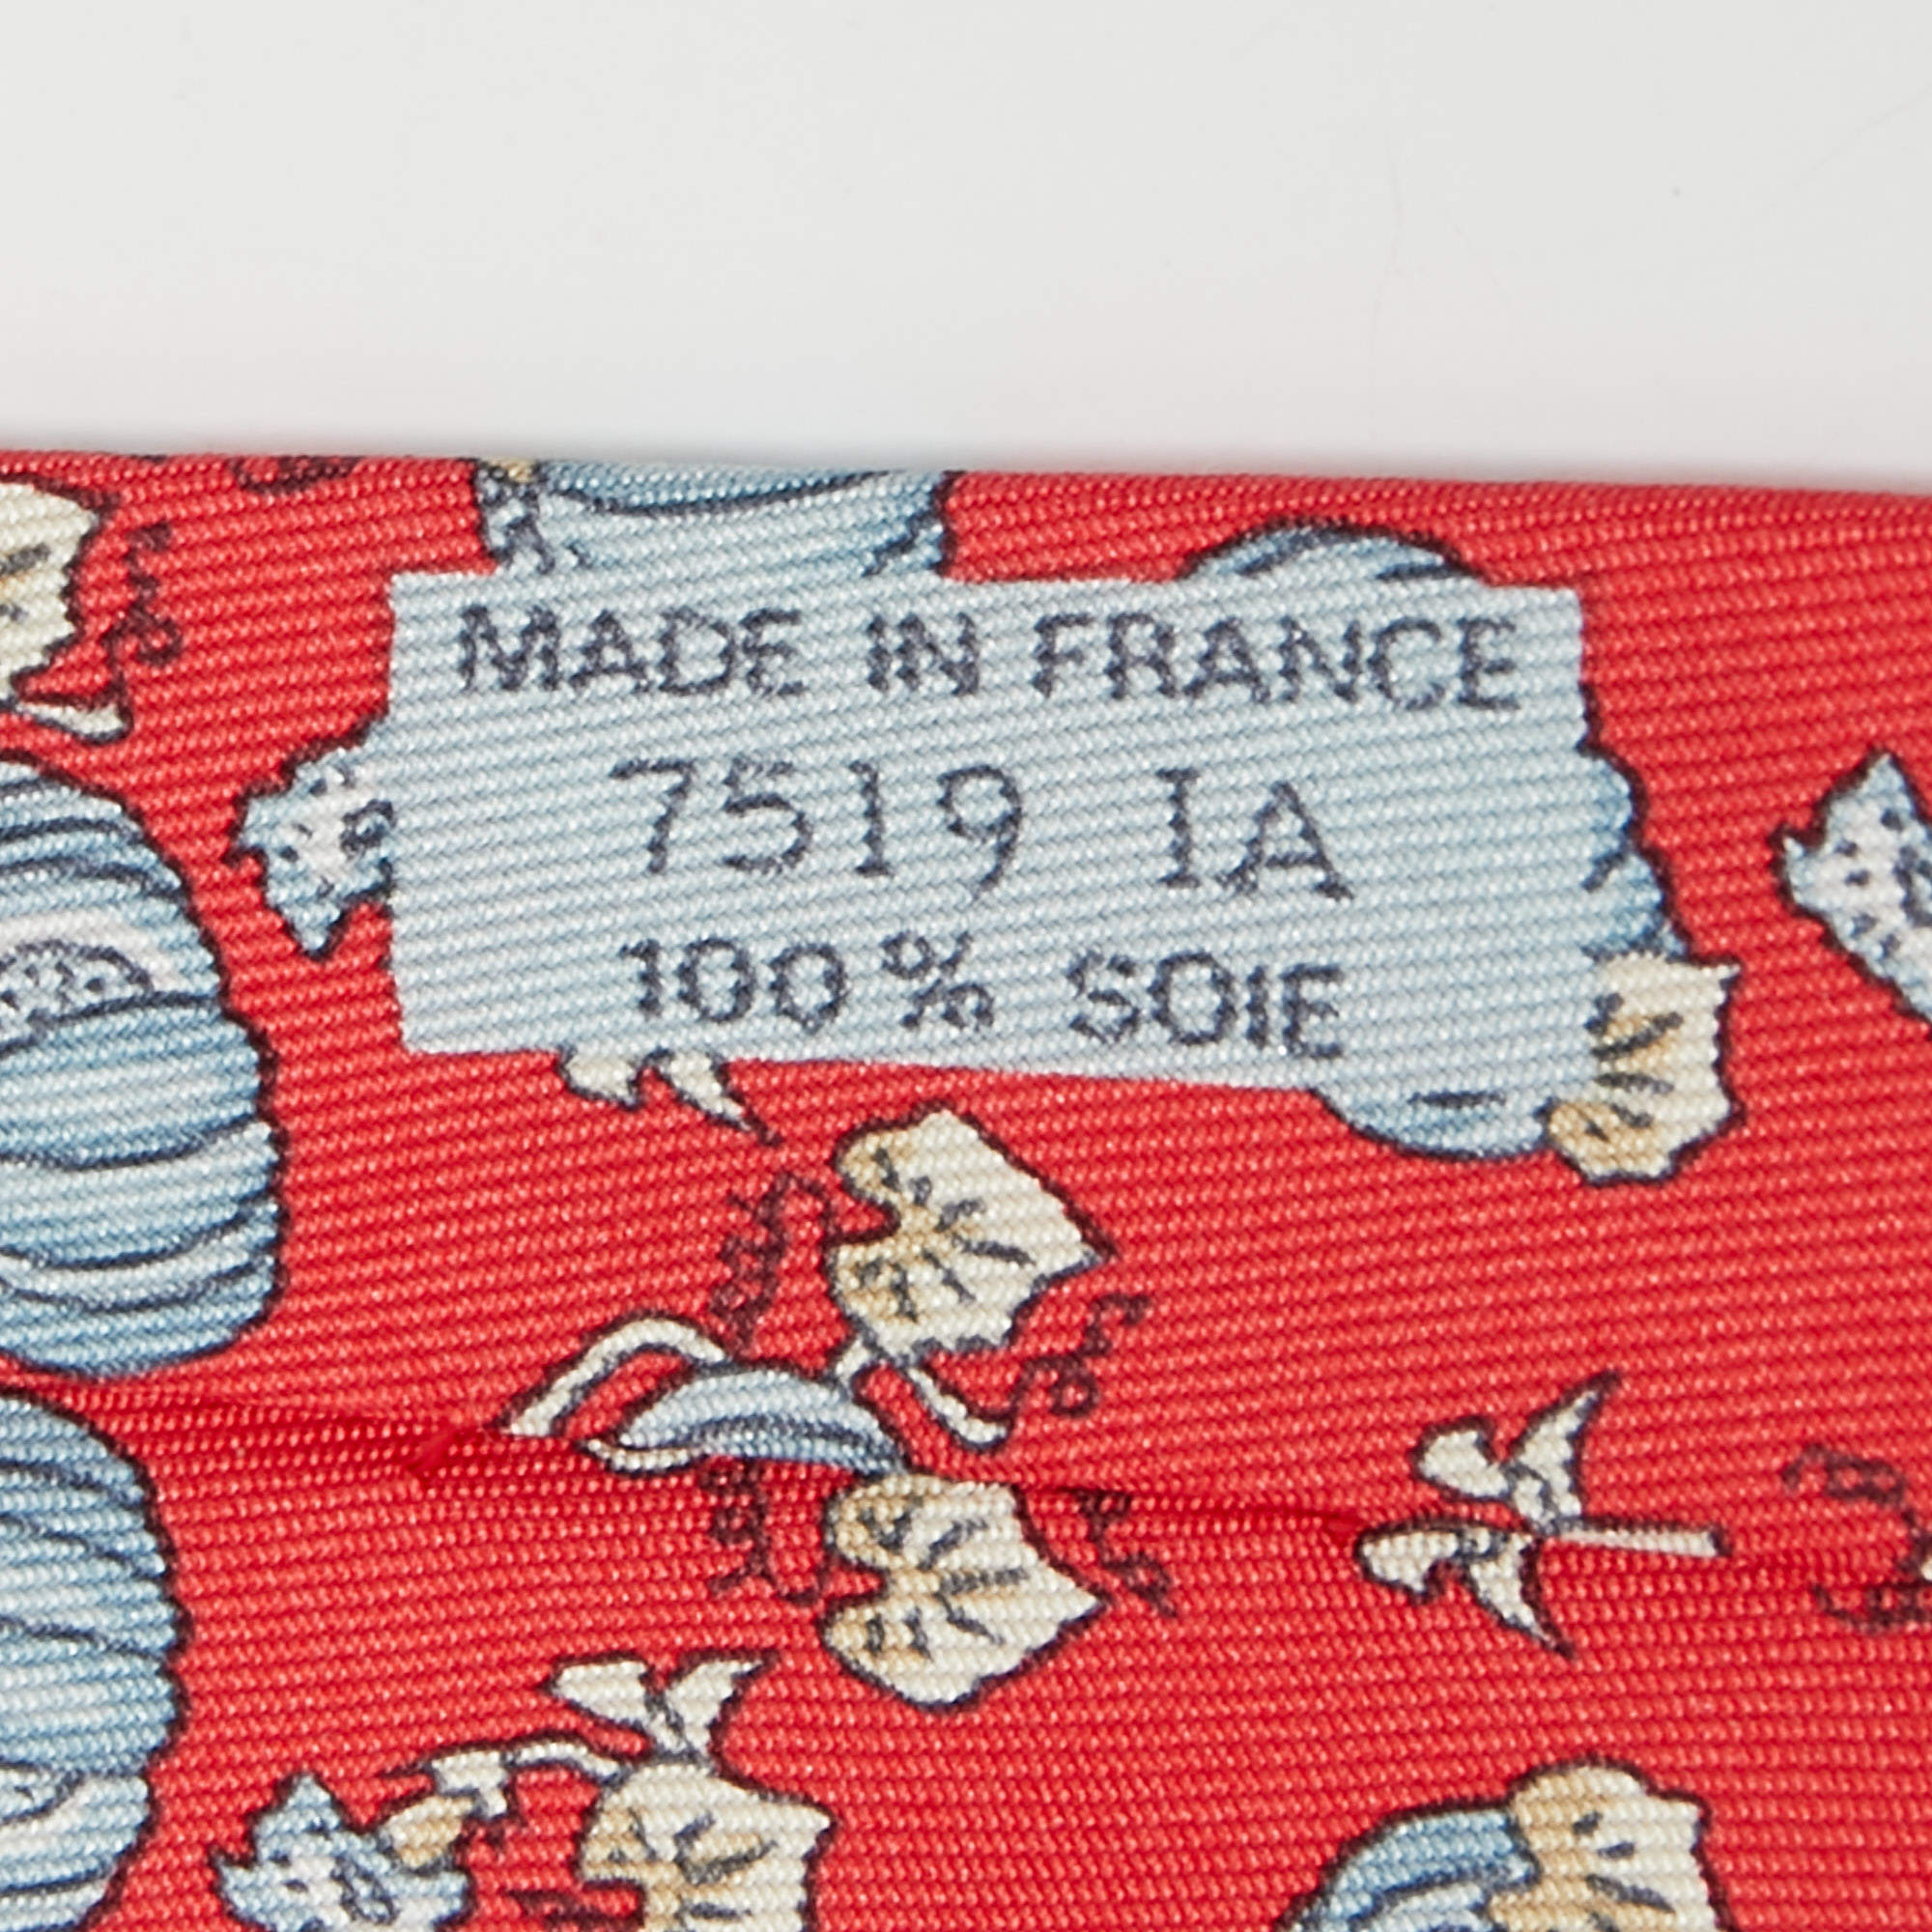 HERMÈS red silk tie – Vintage Carwen